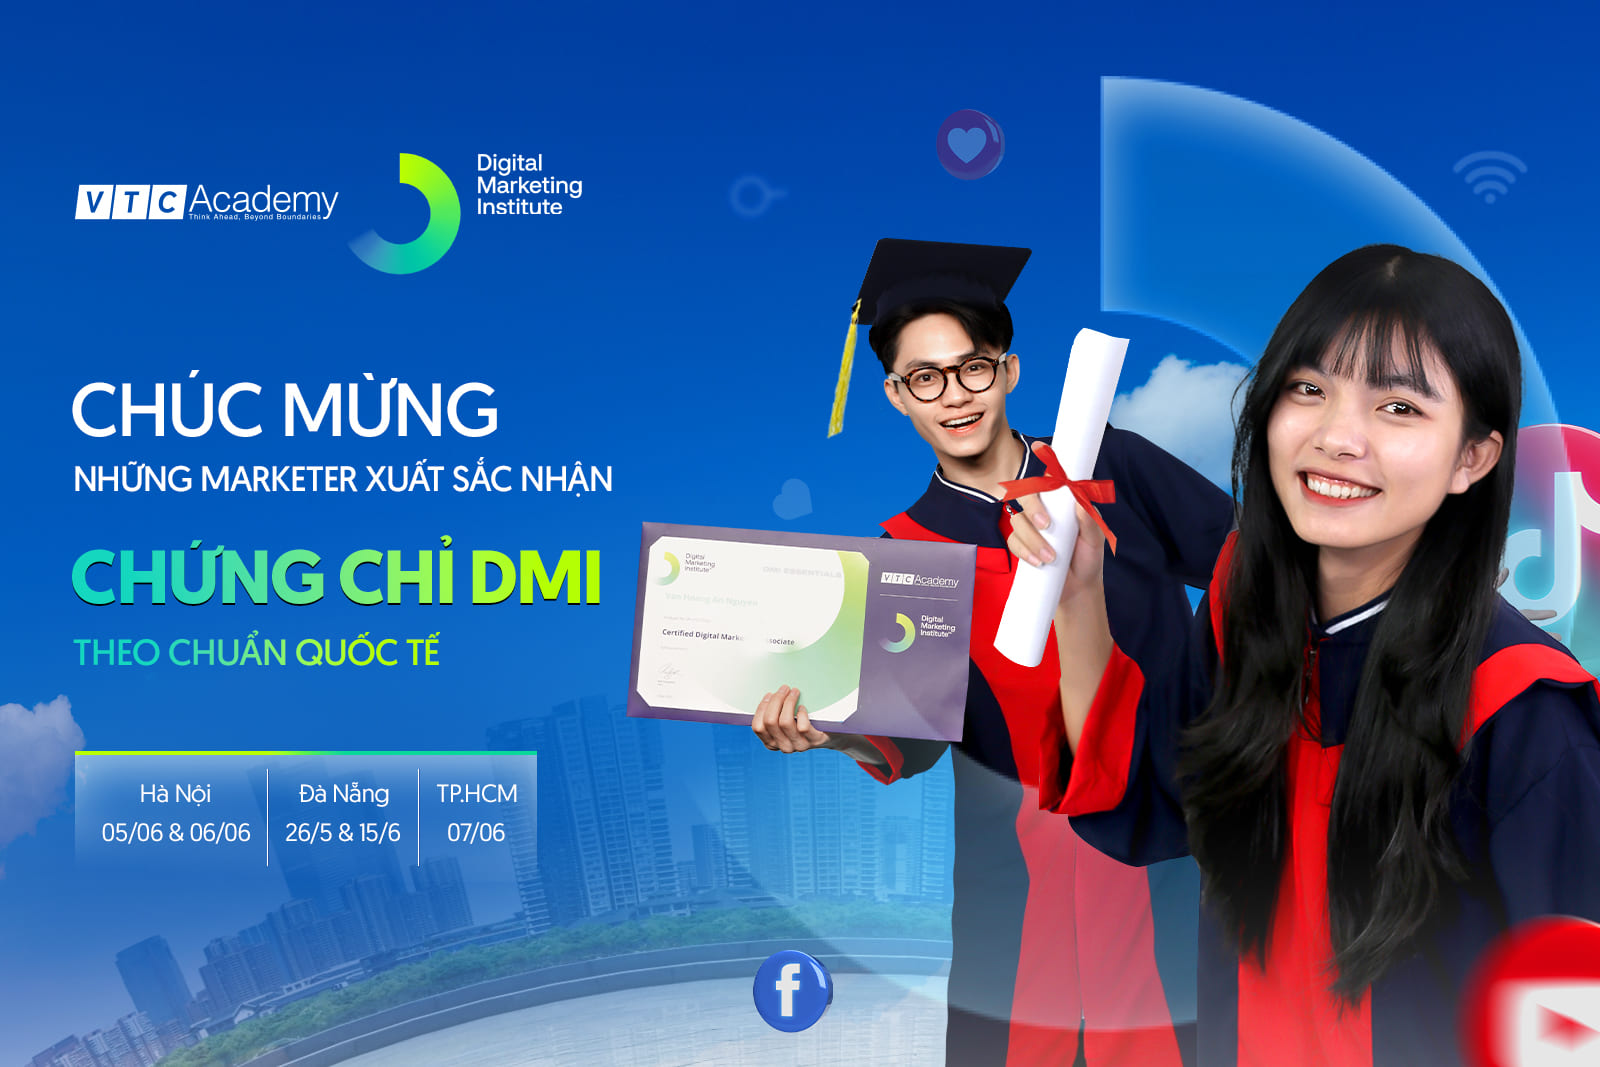 Lễ vinh danh học viên VTC Academy ngành Digital Marketing xuất sắc nhận chứng chỉ DMI Quốc tế